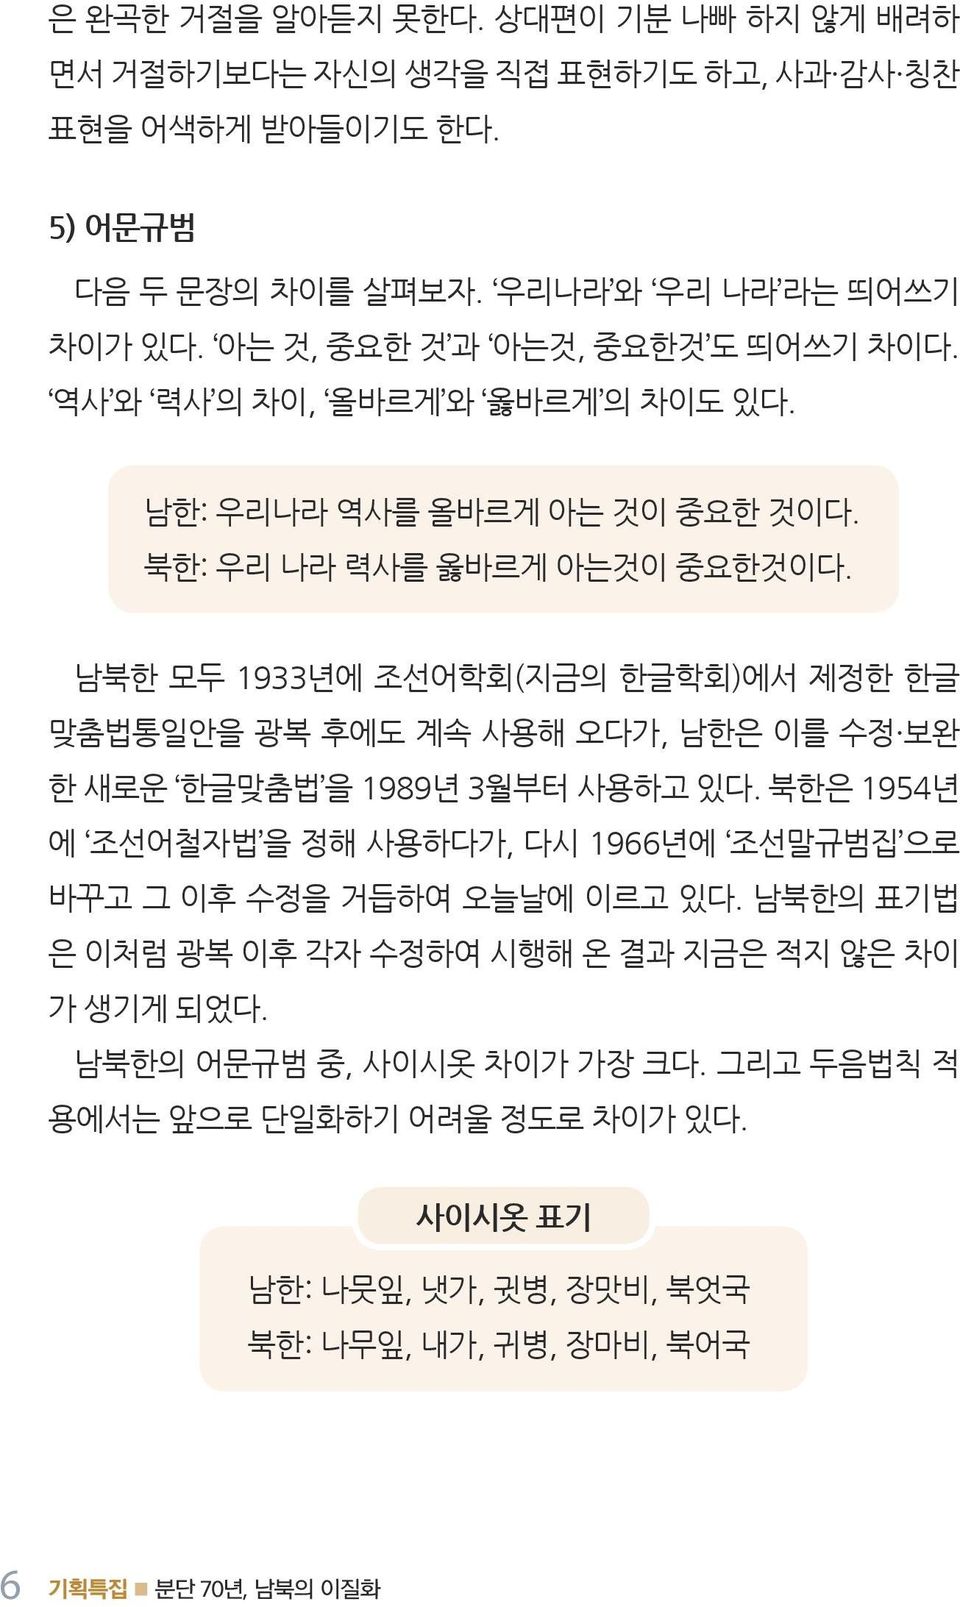 남북한모두 1933년에조선어학회 ( 지금의한글학회 ) 에서제정한한글맞춤법통일안을광복후에도계속사용해오다가, 남한은이를수정 보완한새로운 한글맞춤법 을 1989년 3월부터사용하고있다.